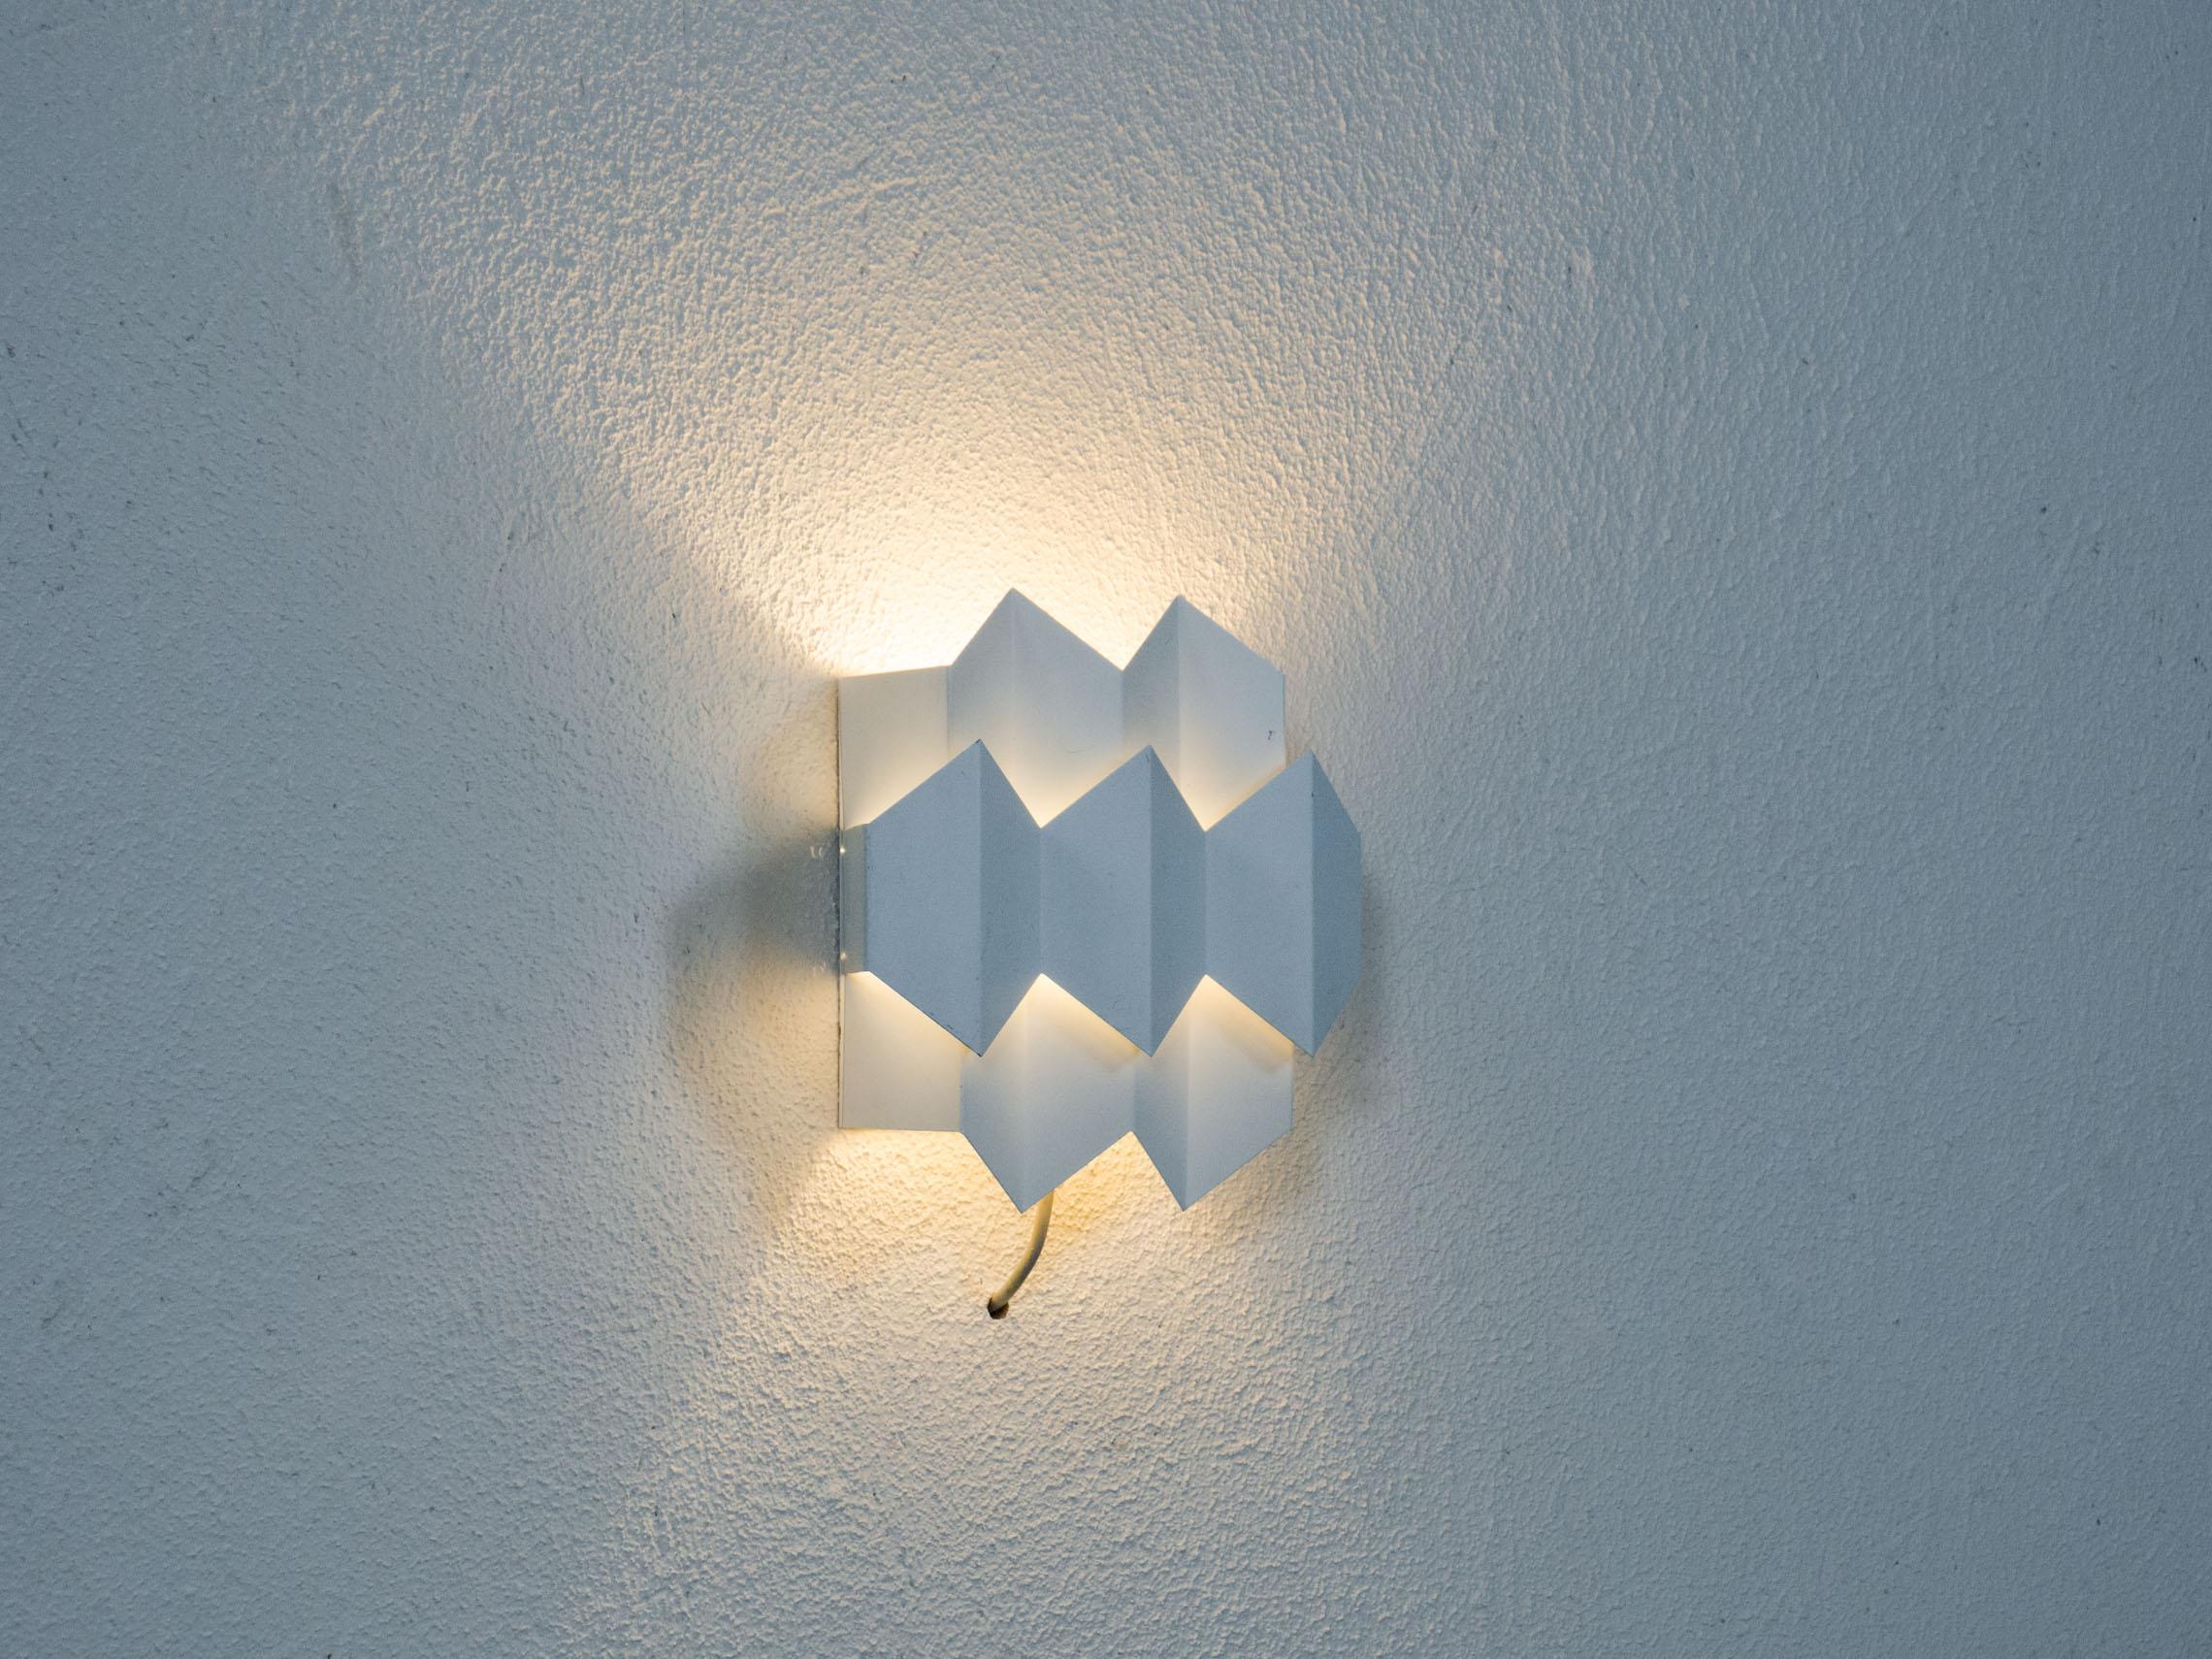 Applique fabriquée par l'entreprise danoise d'éclairage Lyfa, un nom connu de tous, et conçue par Bent Karlby.

Ce luminaire de taille modeste est fabriqué en acier plaqué et est laqué blanc. Steele, le nom de ce modèle provient des sept hexagones